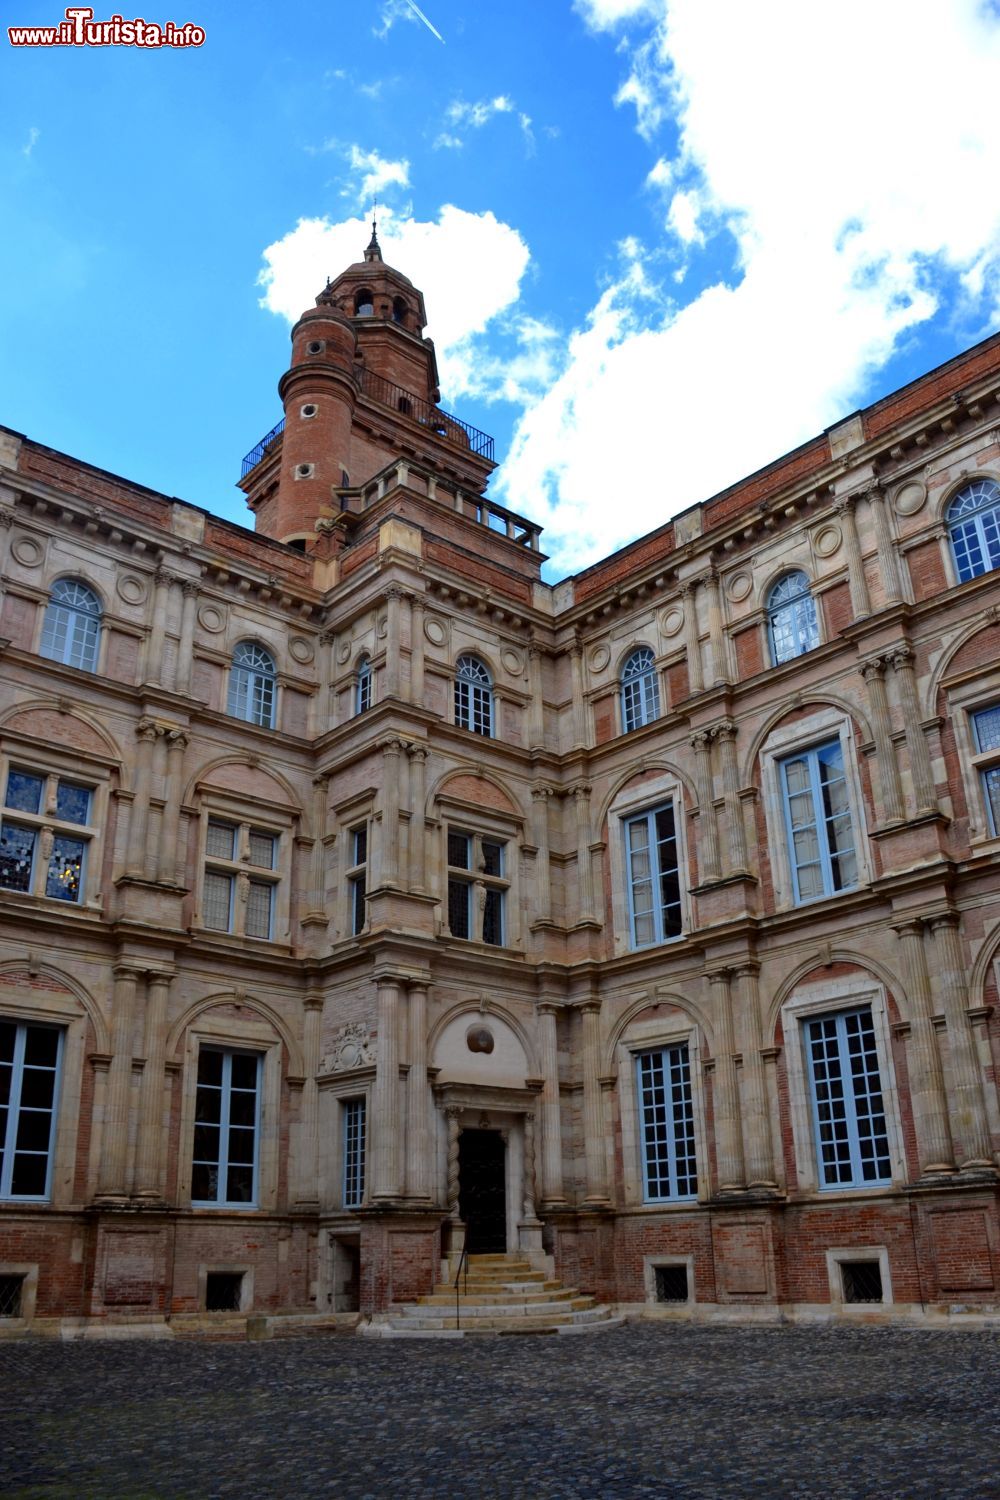 Immagine L'Hotel d'Assezat è uno degli edifici storici più importanti del centro di Tolosa (Toulouse). Oggi ospita il museo della collezione privata della Fondazione Bemberg.